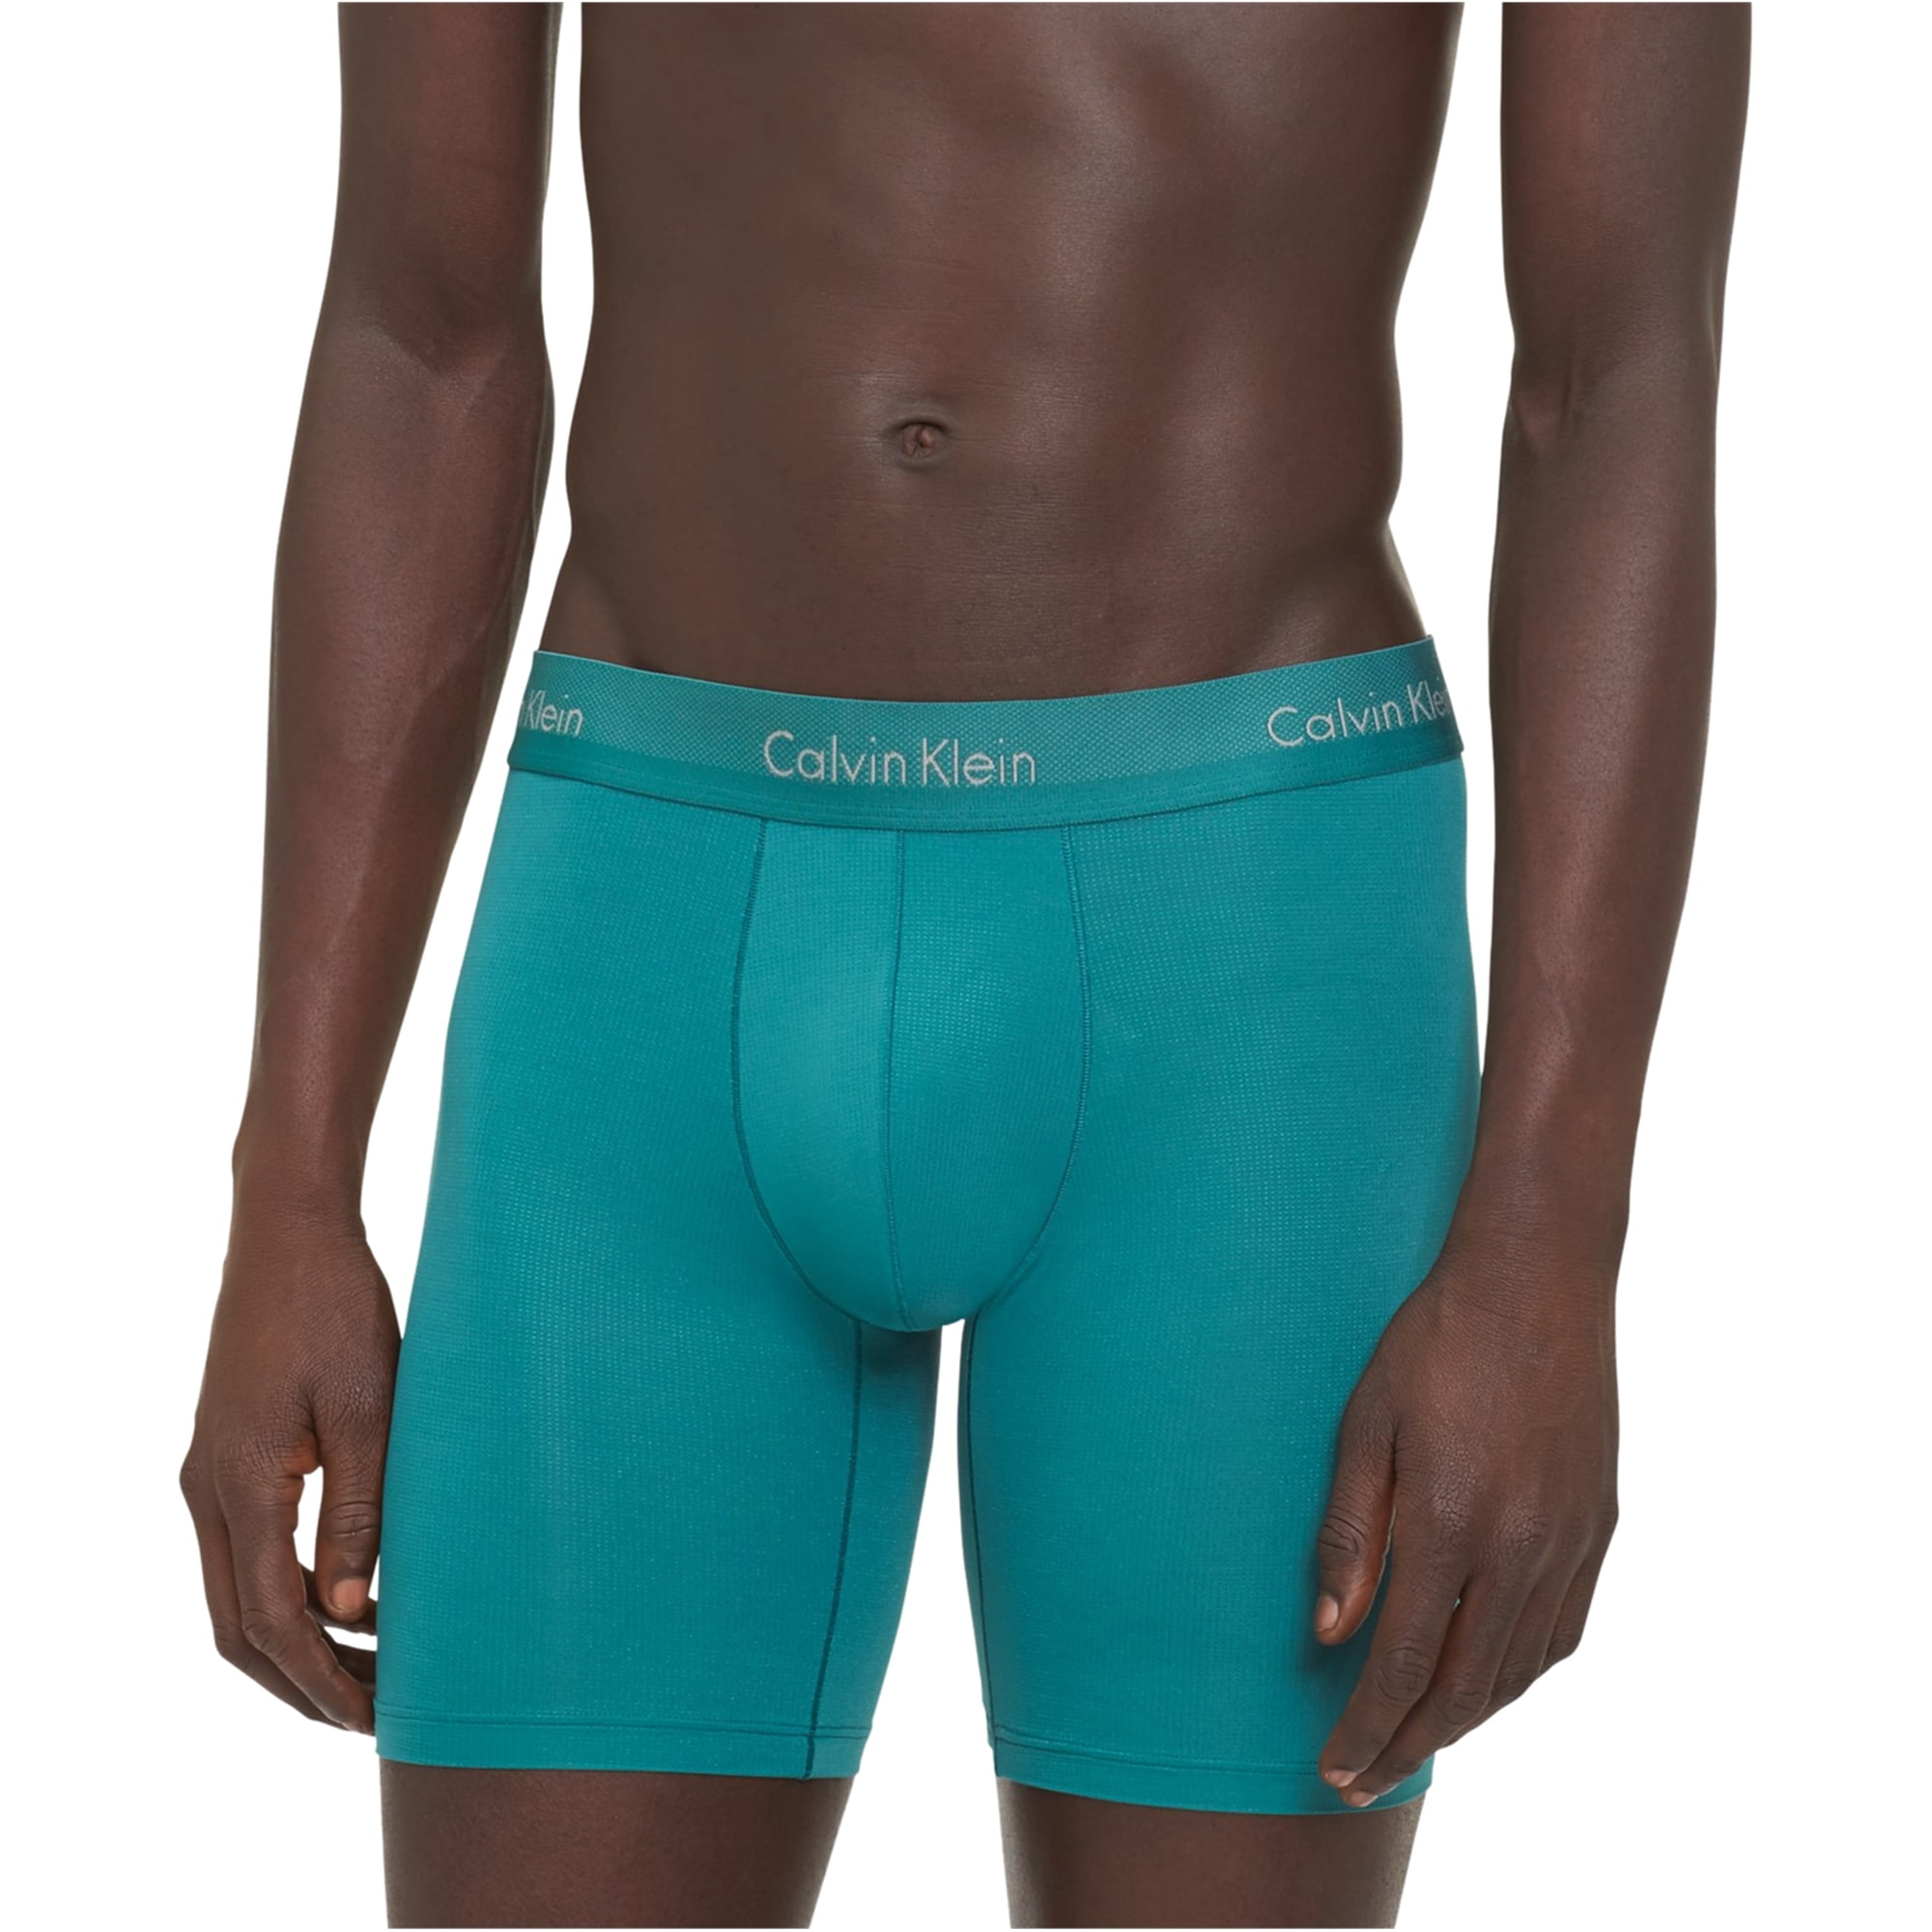 Calvin Klein - Calvin Klein Mens Light Underwear Briefs - Walmart.com ...